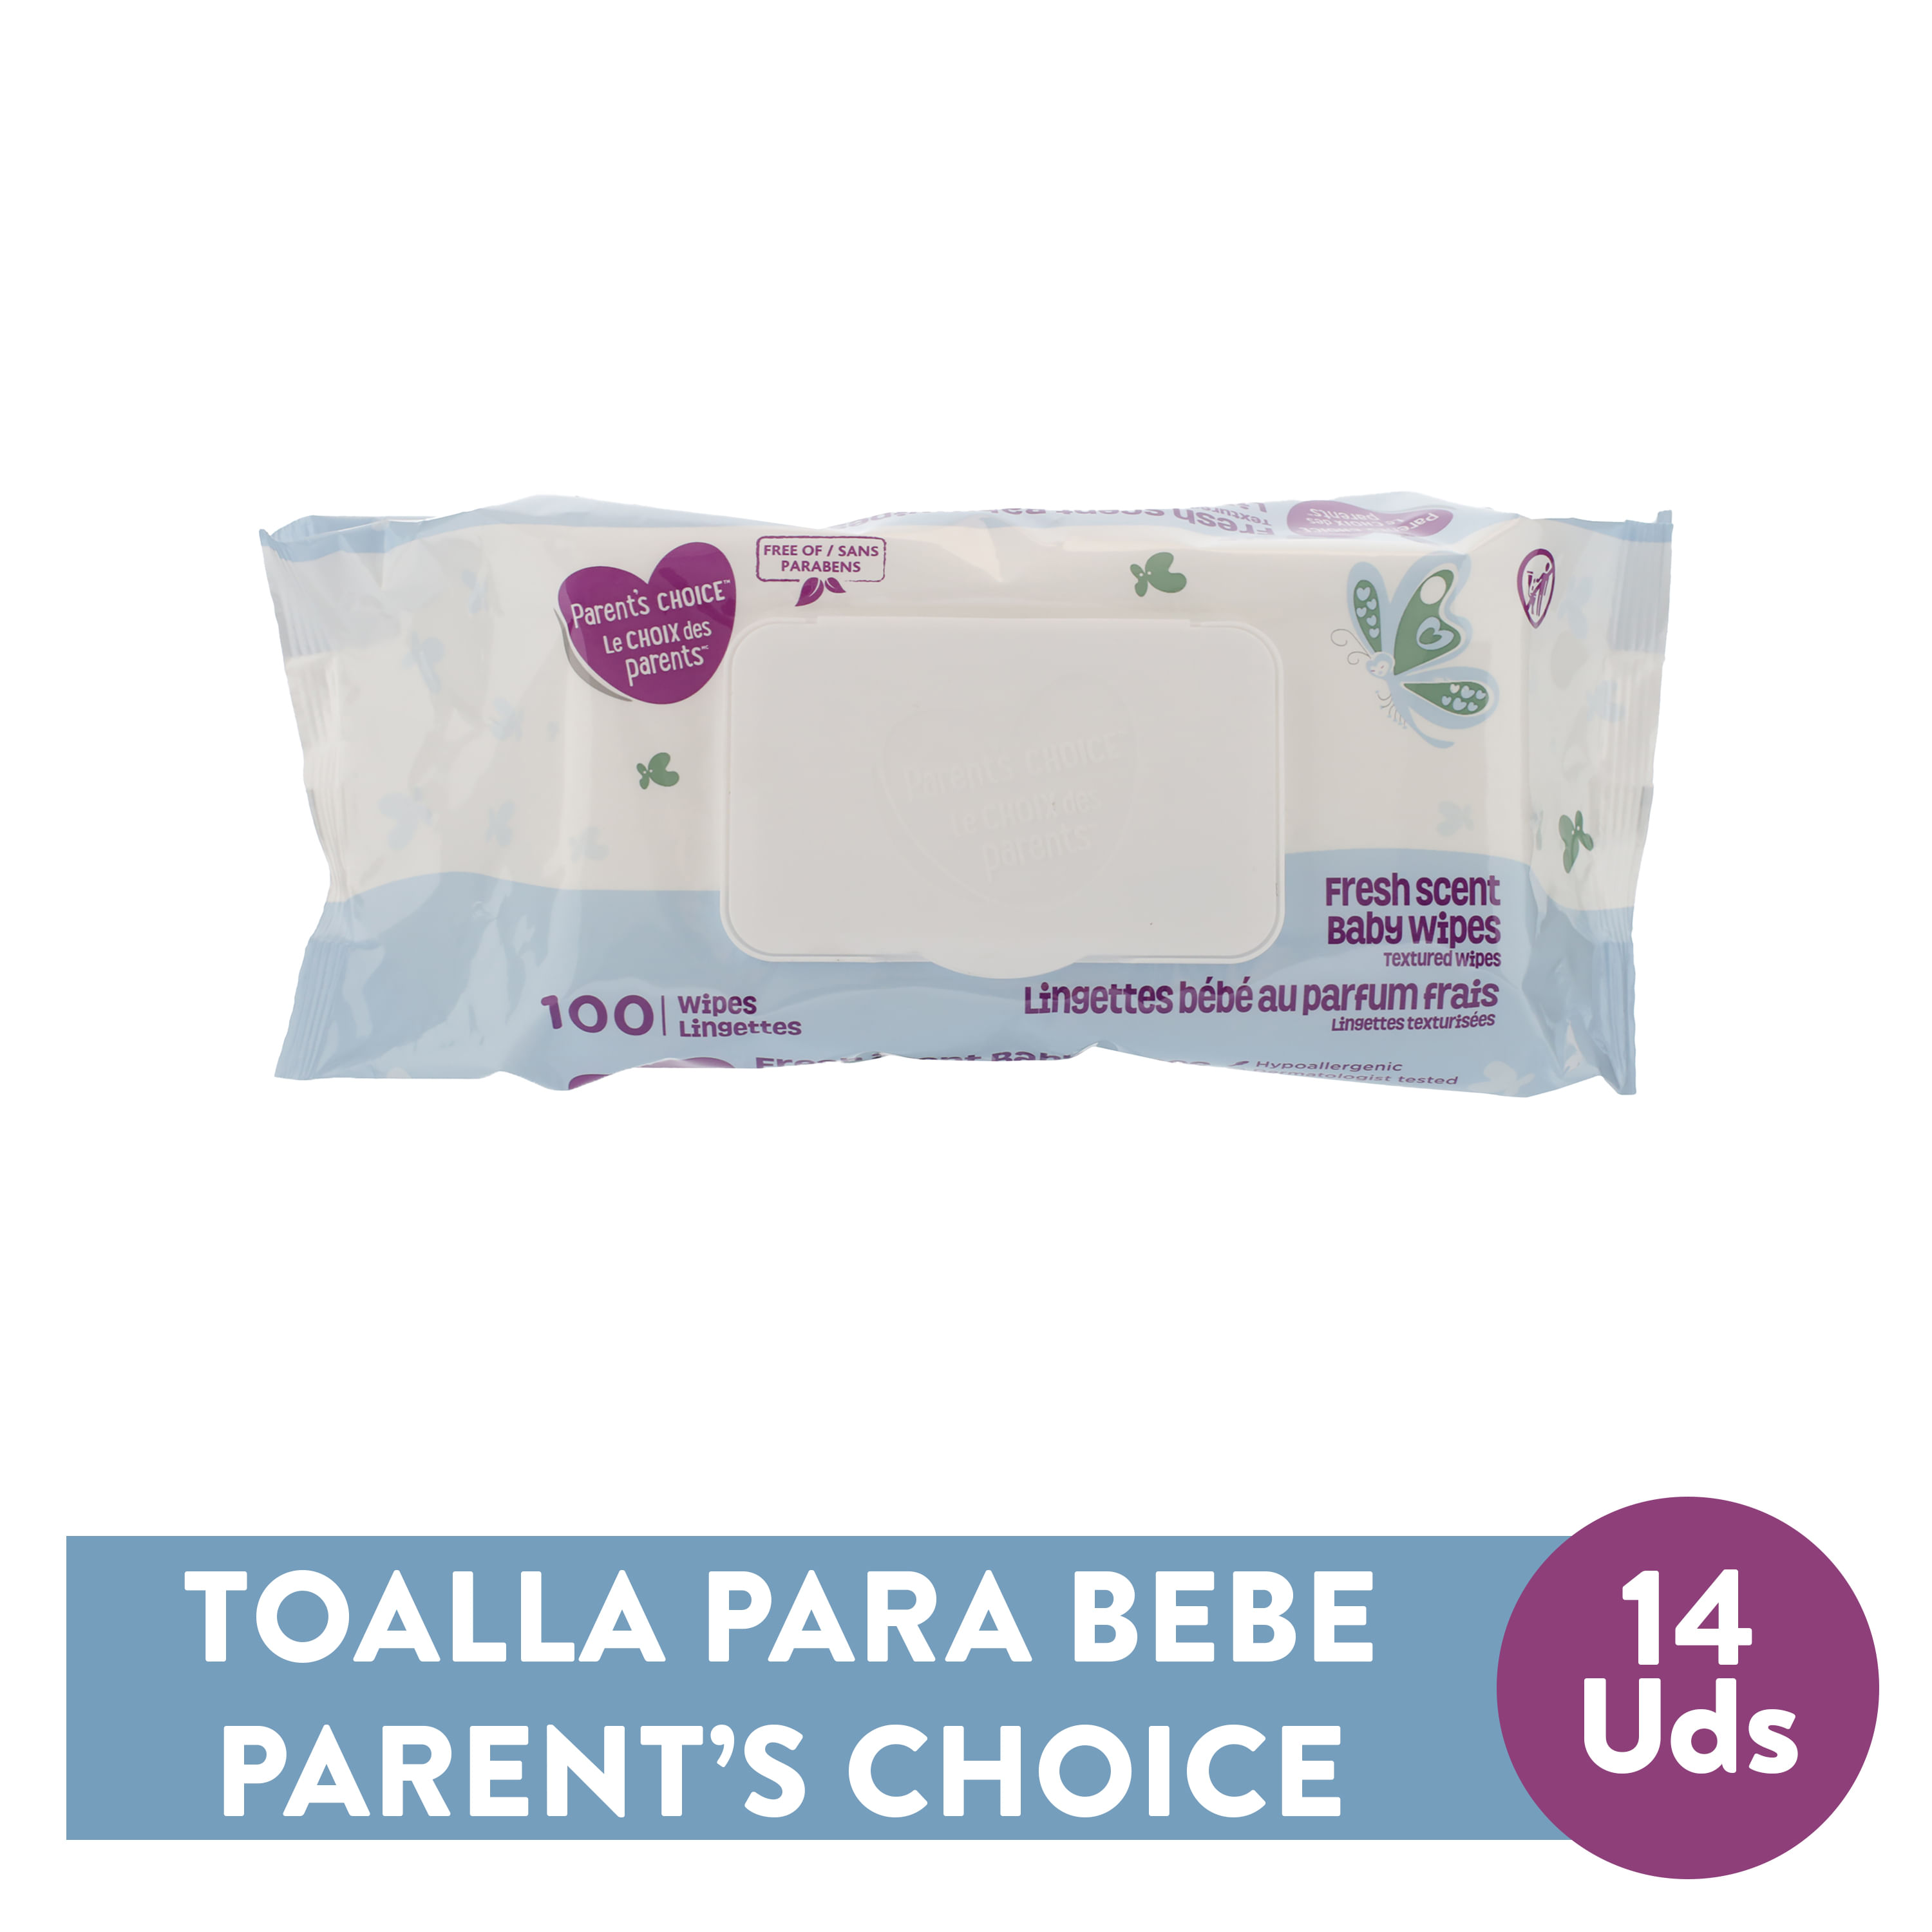 Toallas-H-medas-Parent-s-Choice-Con-Aroma-100-unidades-1-81619